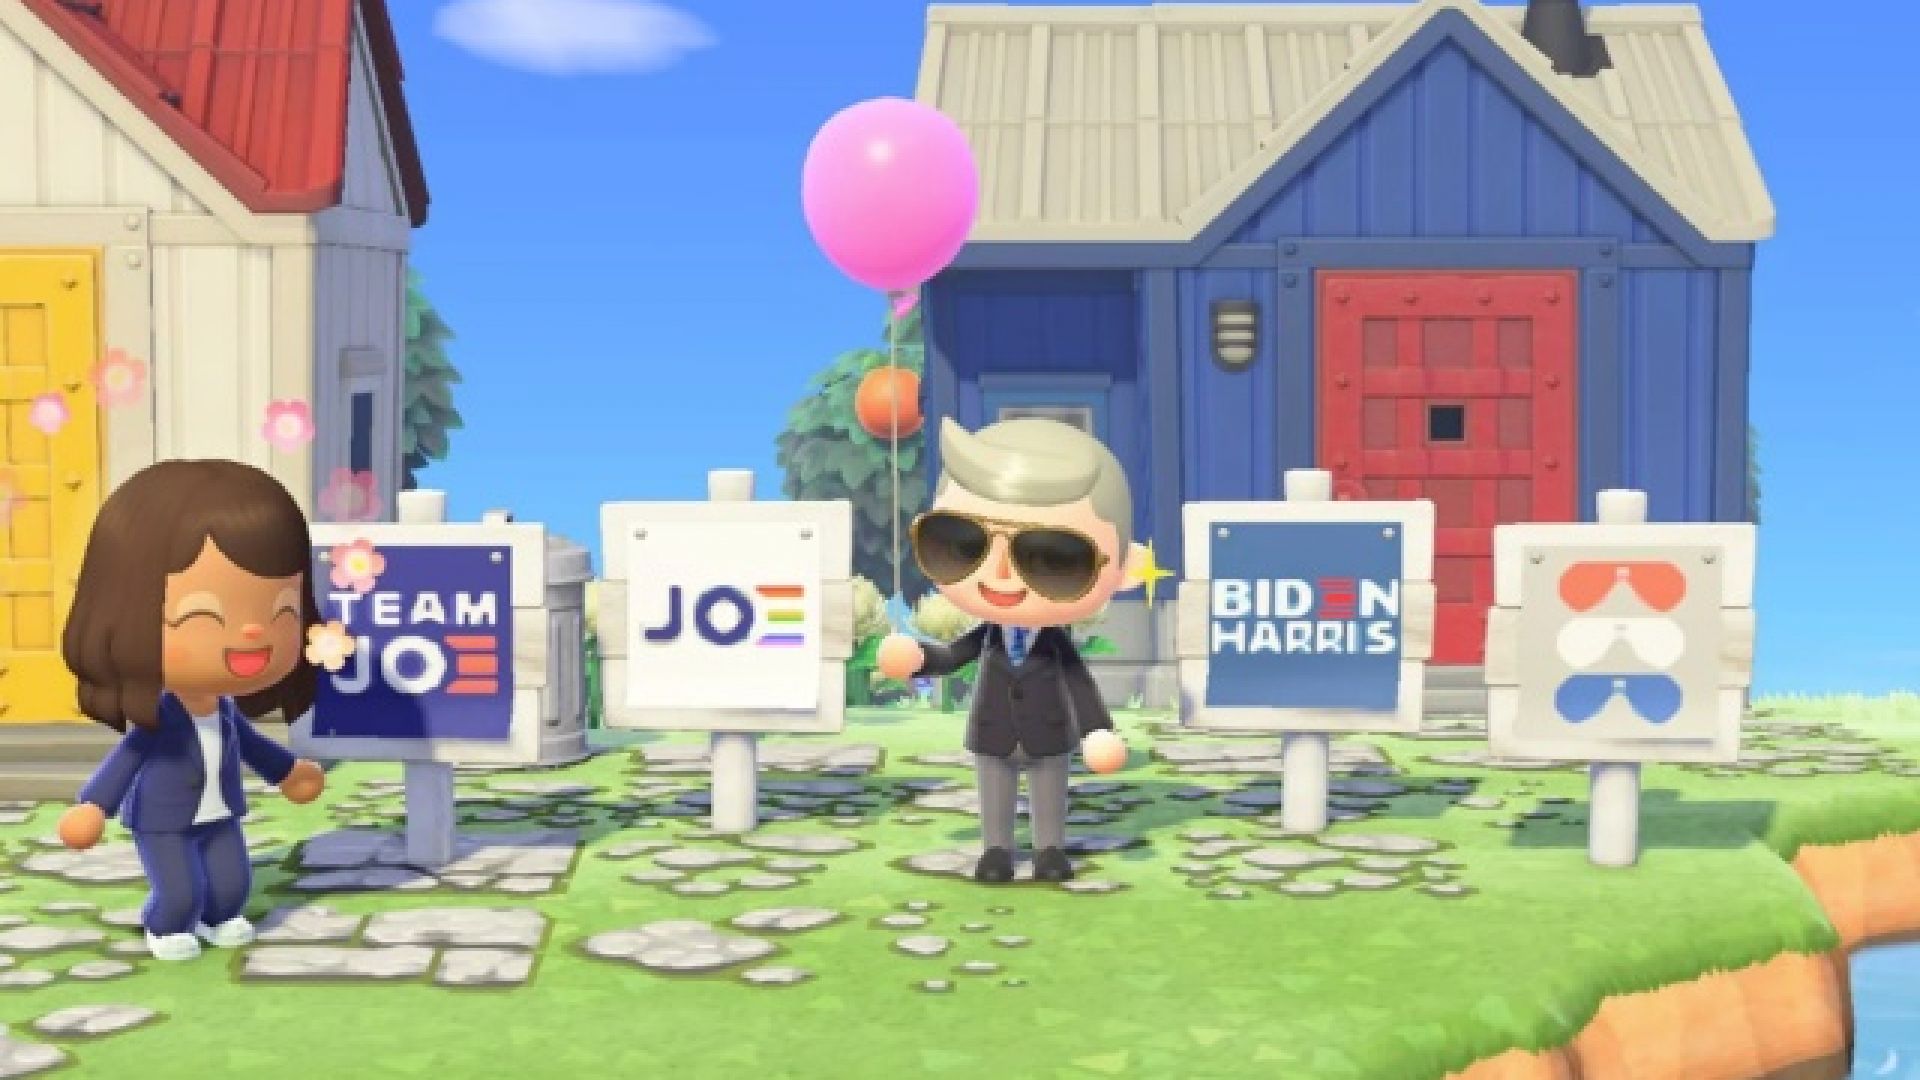 Джо Байдън започна да рекламира в играта Animal Crossing